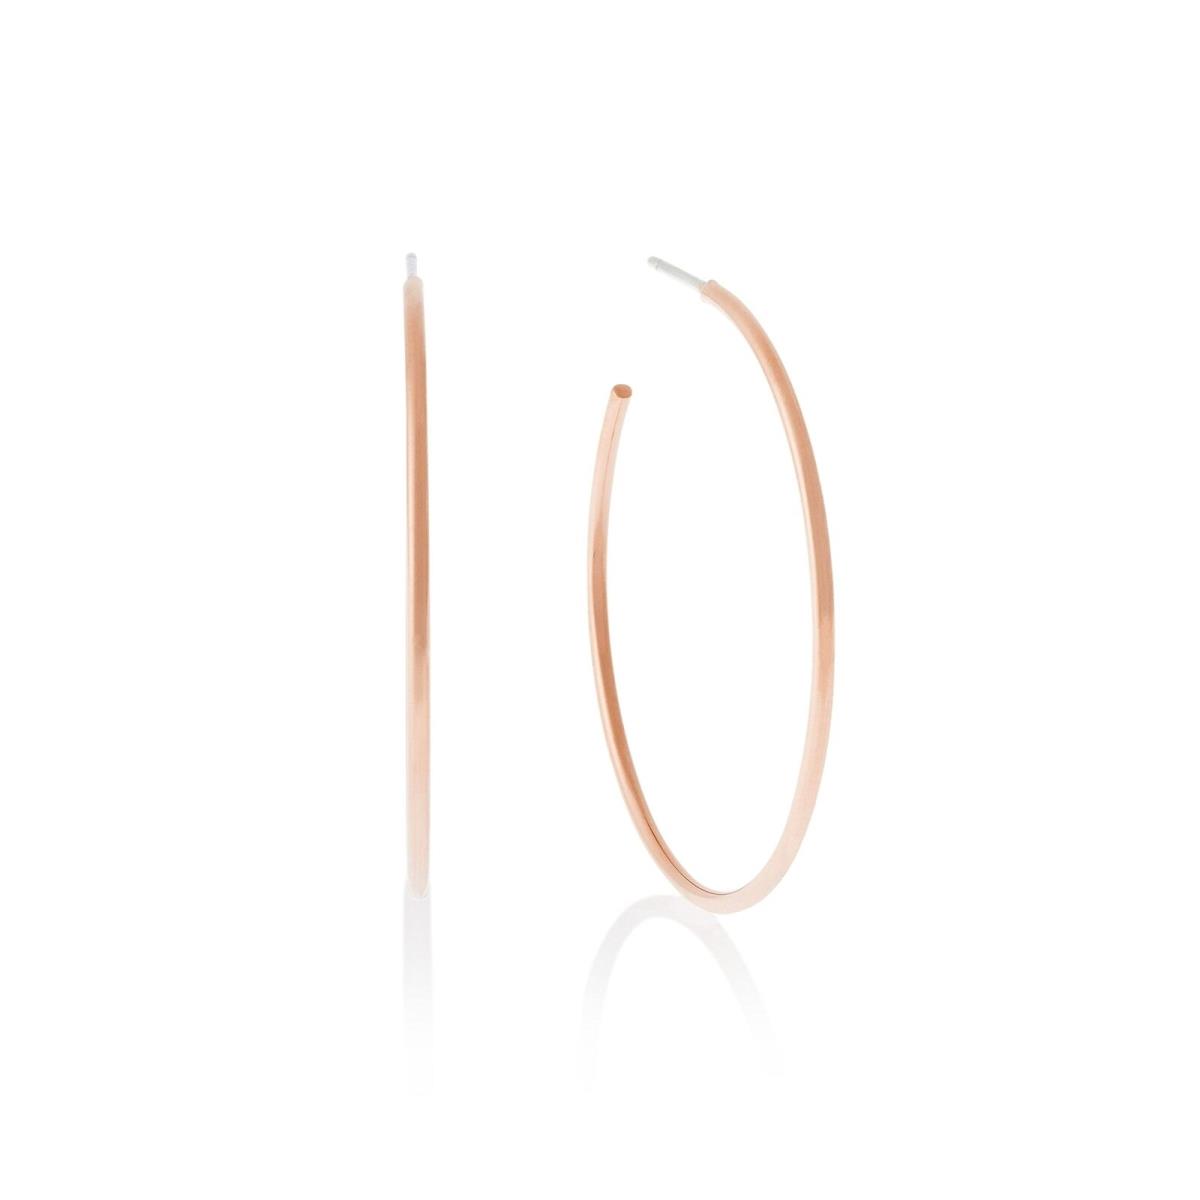 Michael Kors Stainless Steel Hoop Earrings For Women Color Rose Gold Model